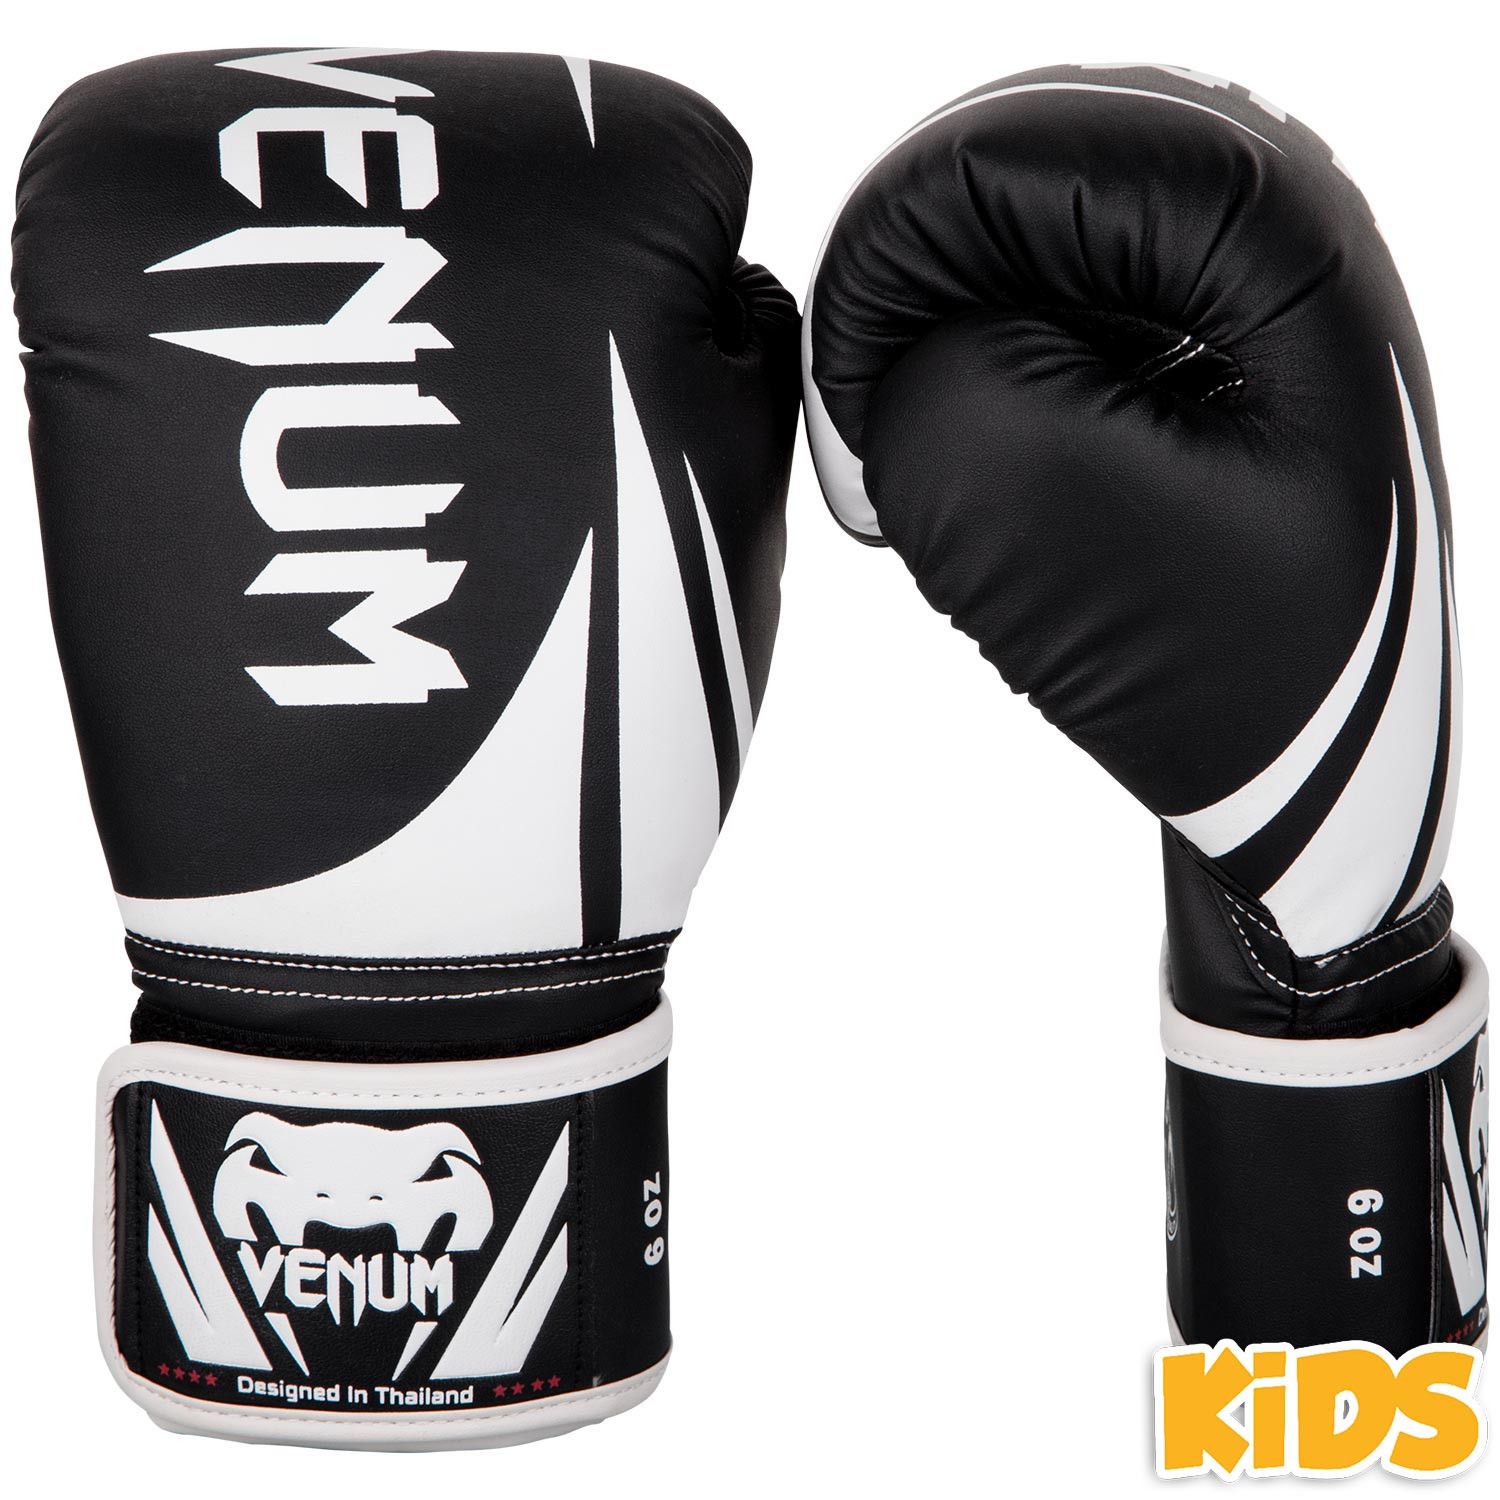 DĚTSKÉ boxerské rukavice Venum Challenger 2.0 Kids - Black/White Váha: 4oz